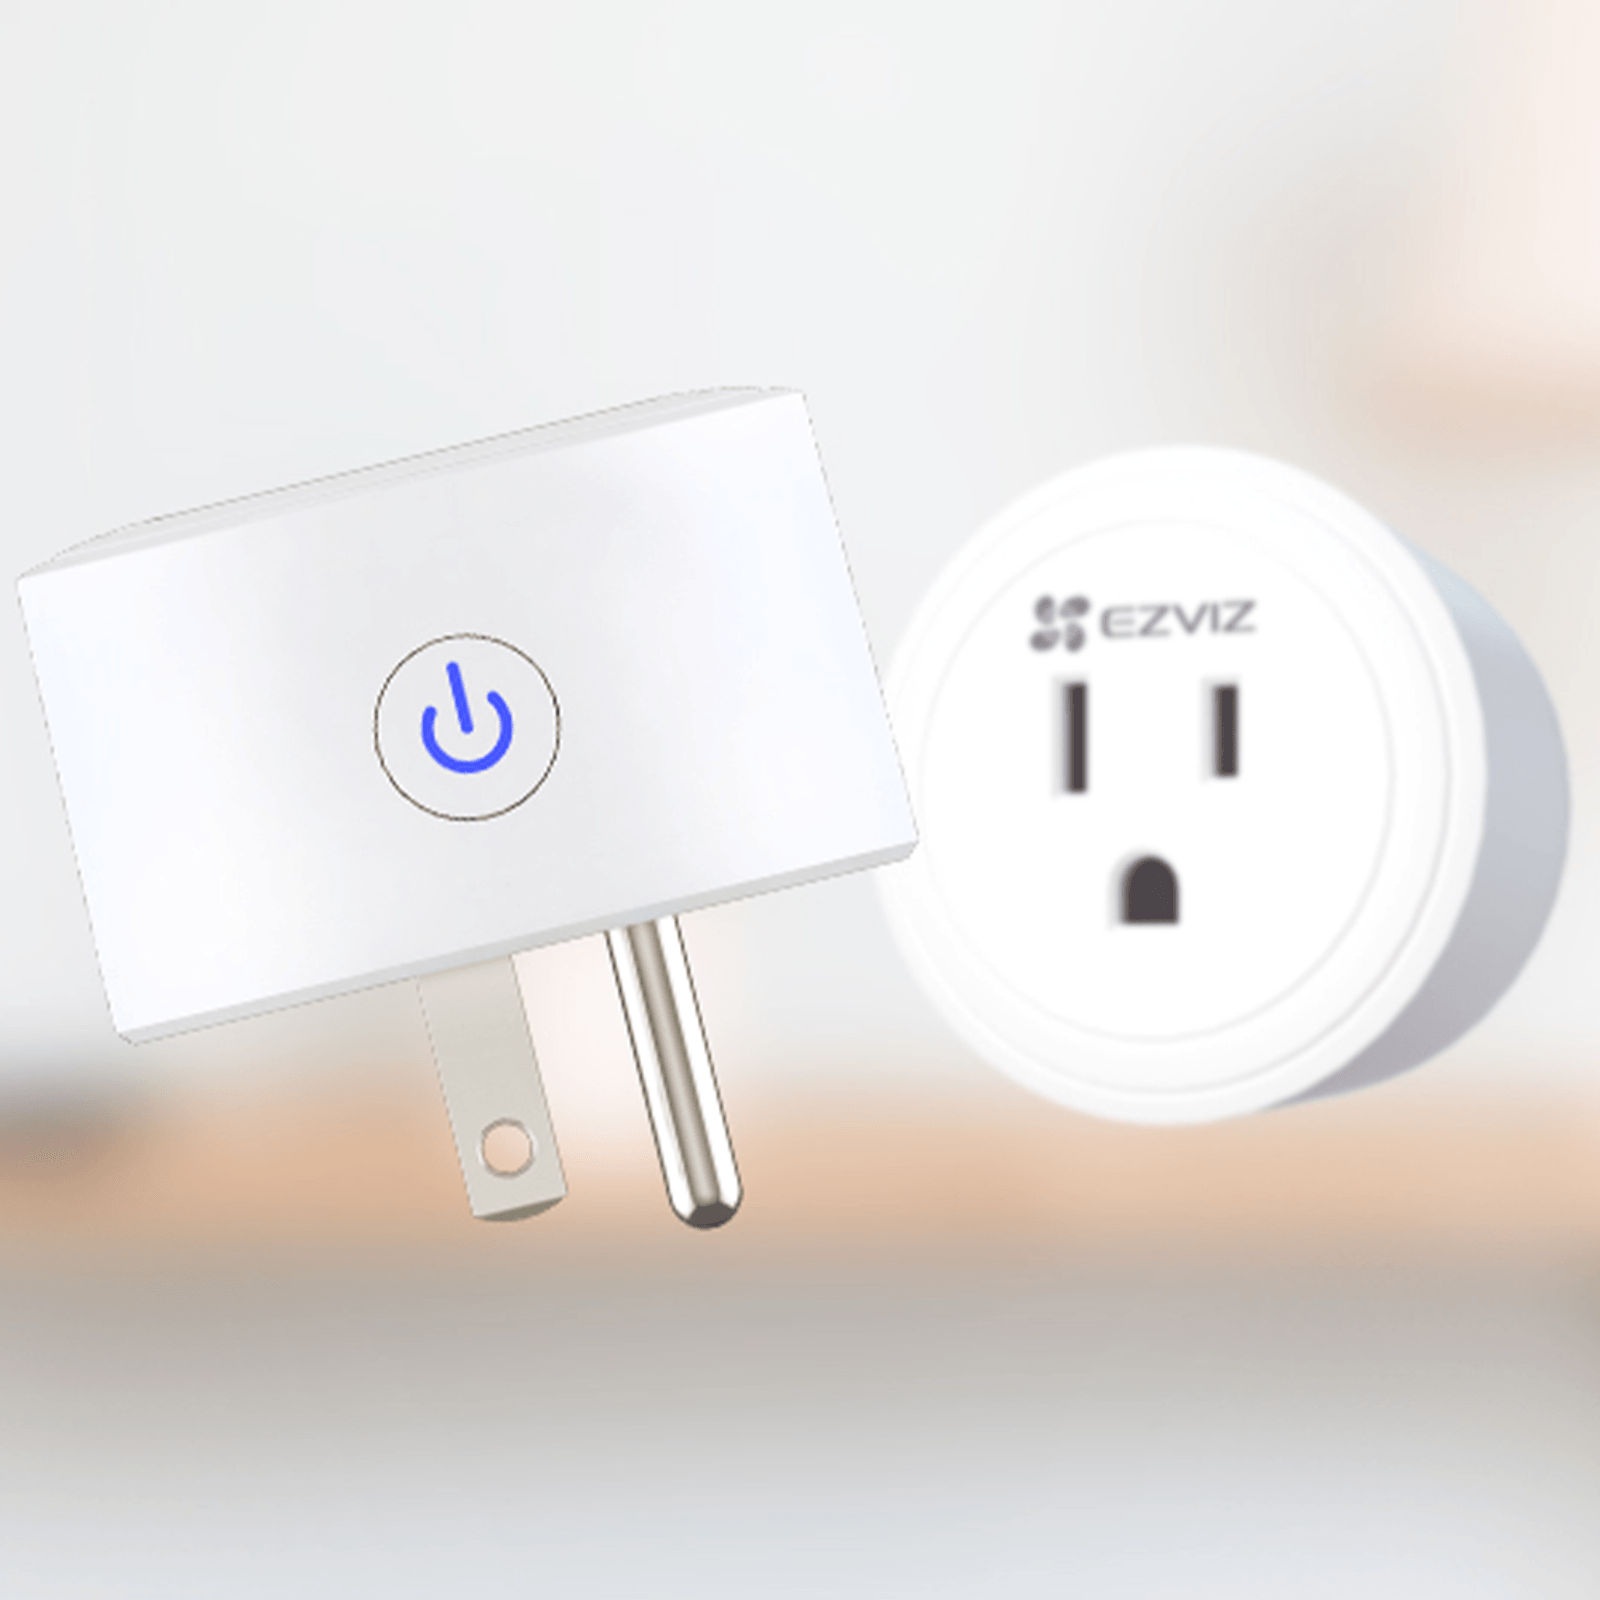 EZVIZ T30 Smart Plug Enchufe Inteligente compatible con Alexa y Google Assistant